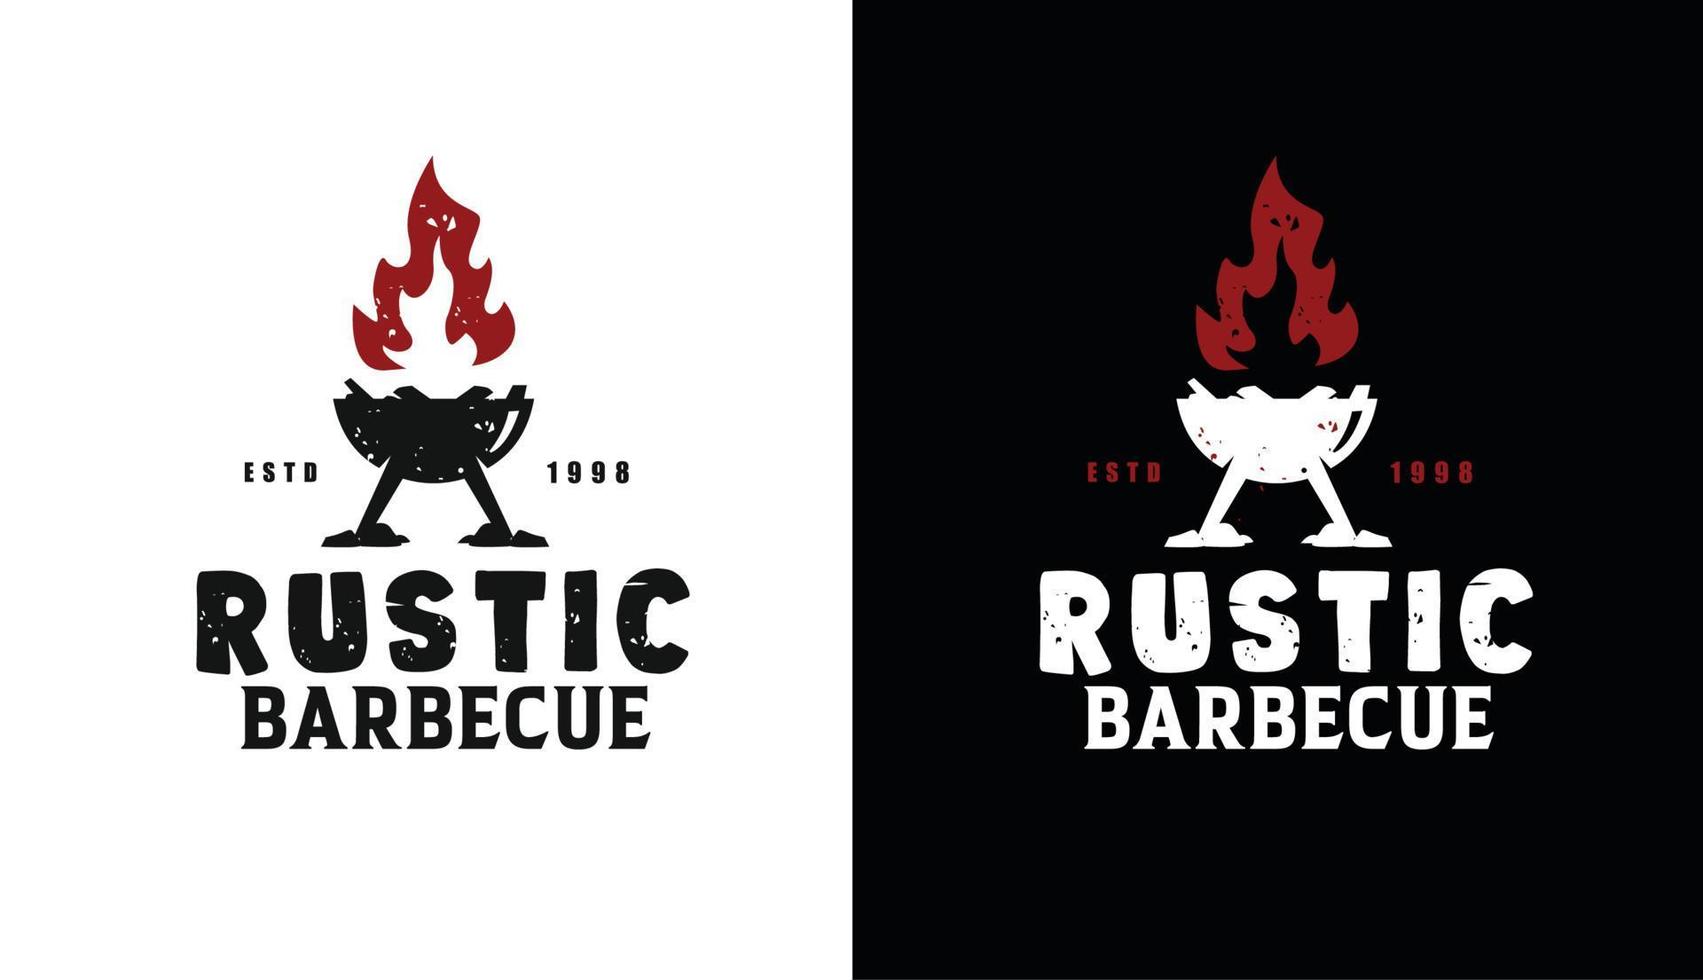 parrilla de barbacoa rústica retro vintage con fuego, vector de diseño de logotipo de etiqueta de barbacoa